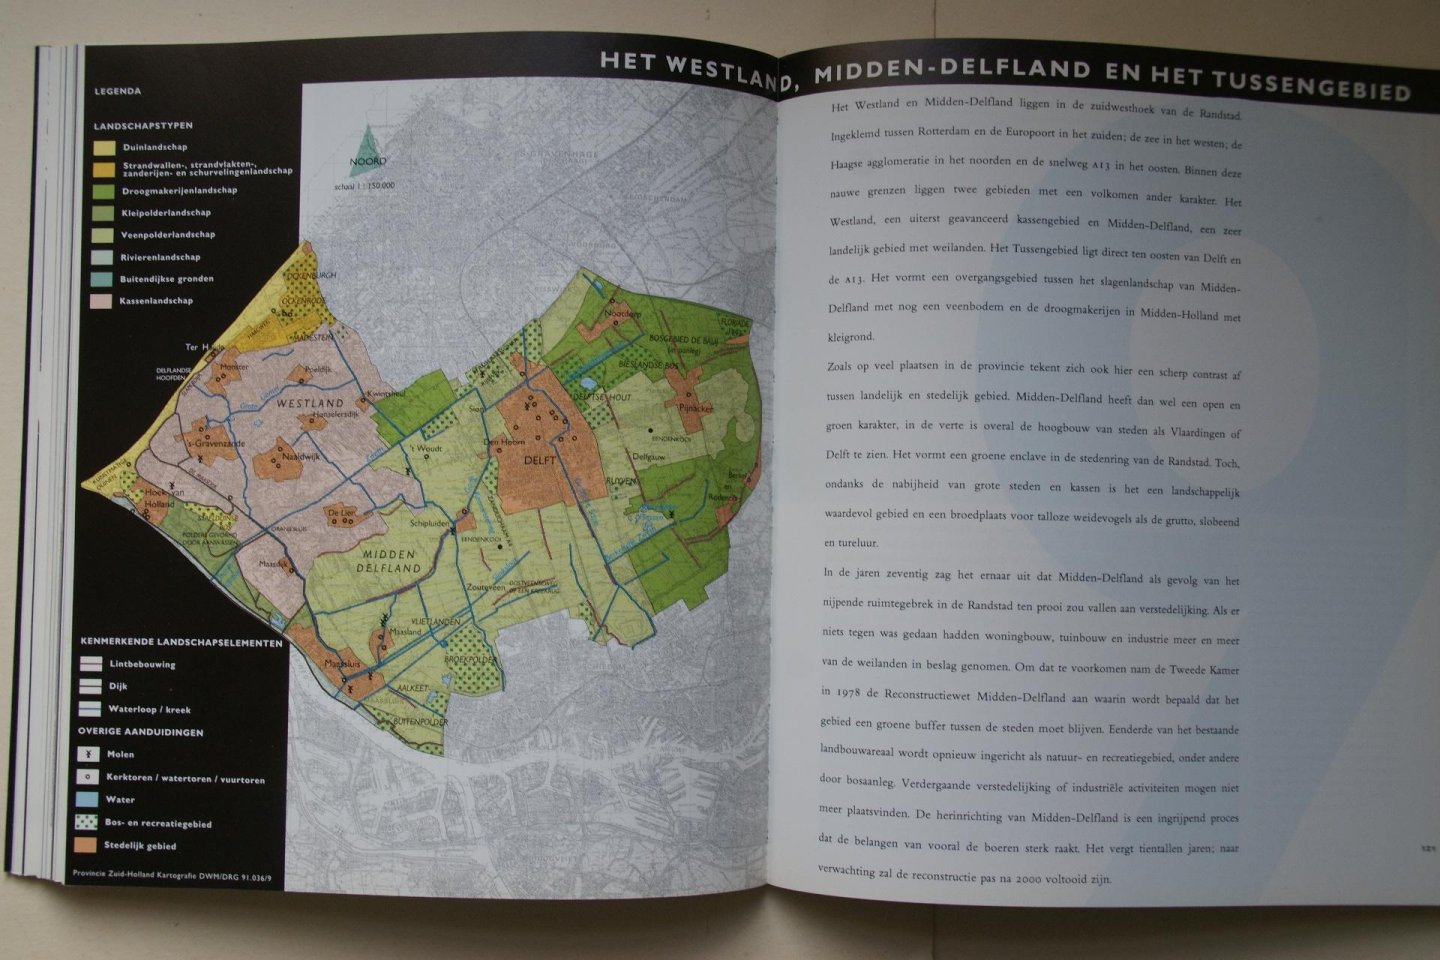 Oerlemans, Hans - aardrijkskunde: Landschappen In Zuid - Holland